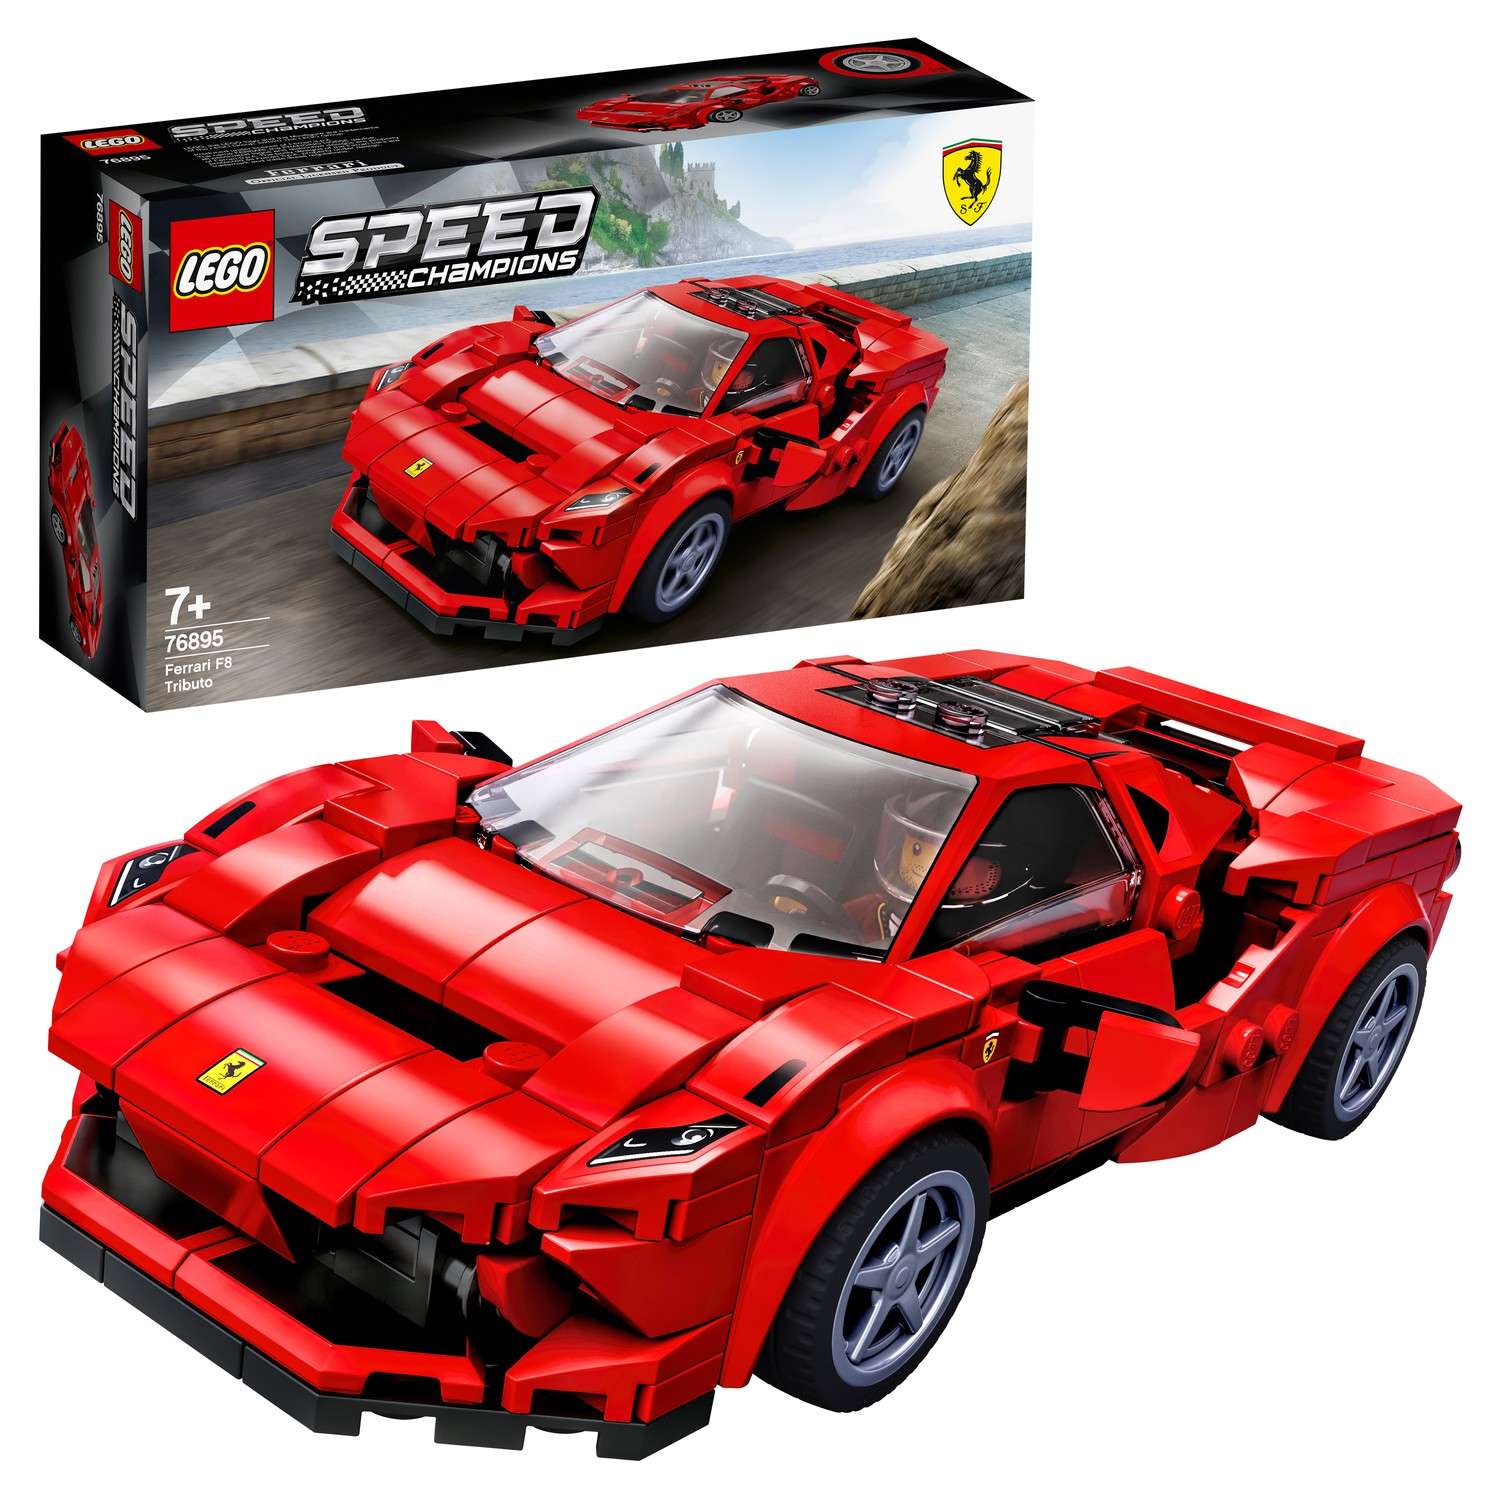 Конструктор LEGO Speed Champions Ferrari F8 Tributo 76895 - фото 1